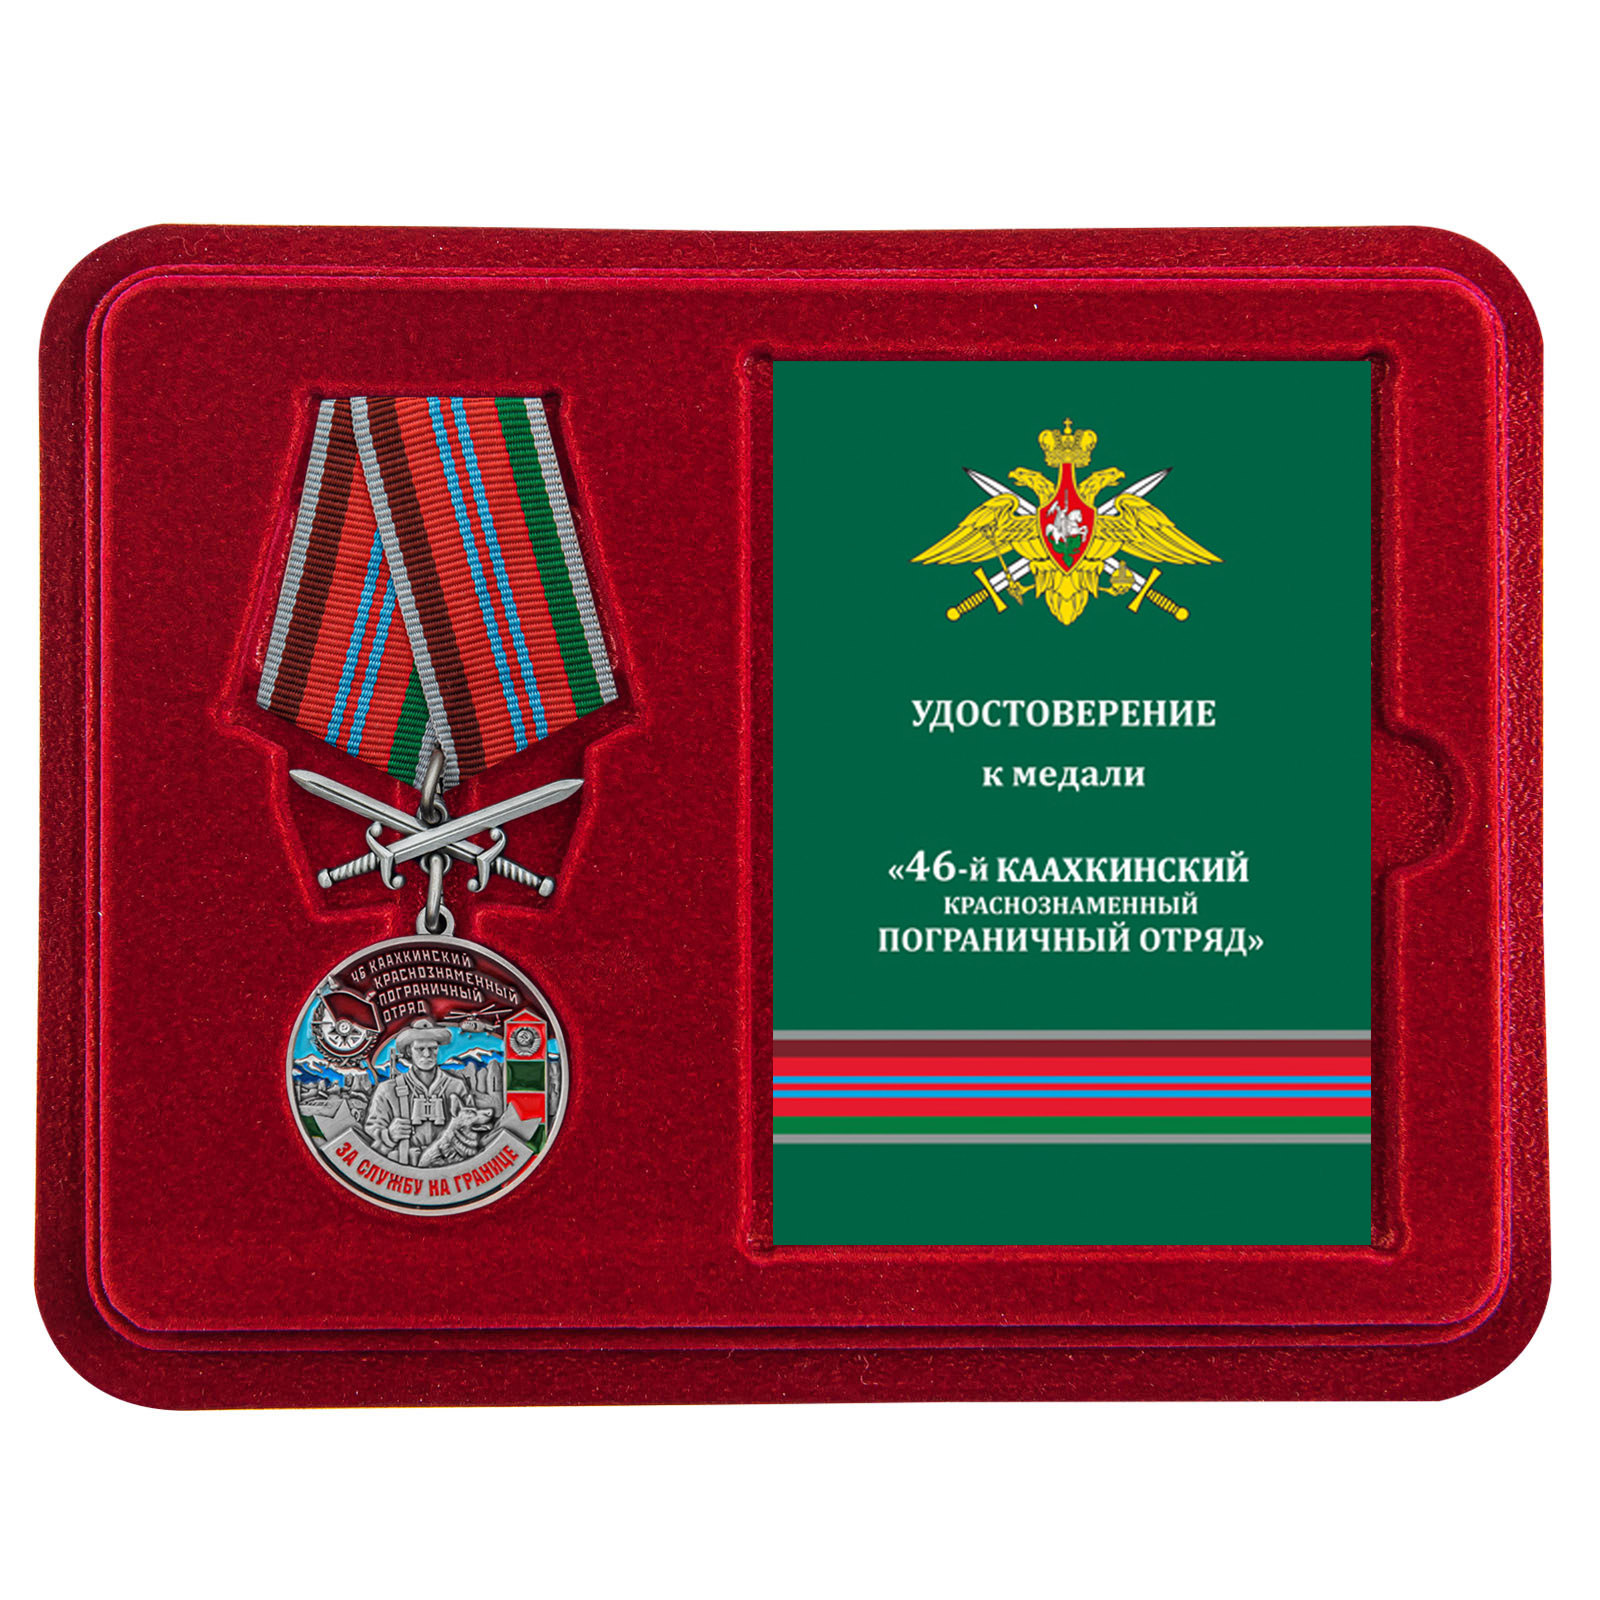 Купить медаль За службу в Каахкинском пограничном отряде онлайн